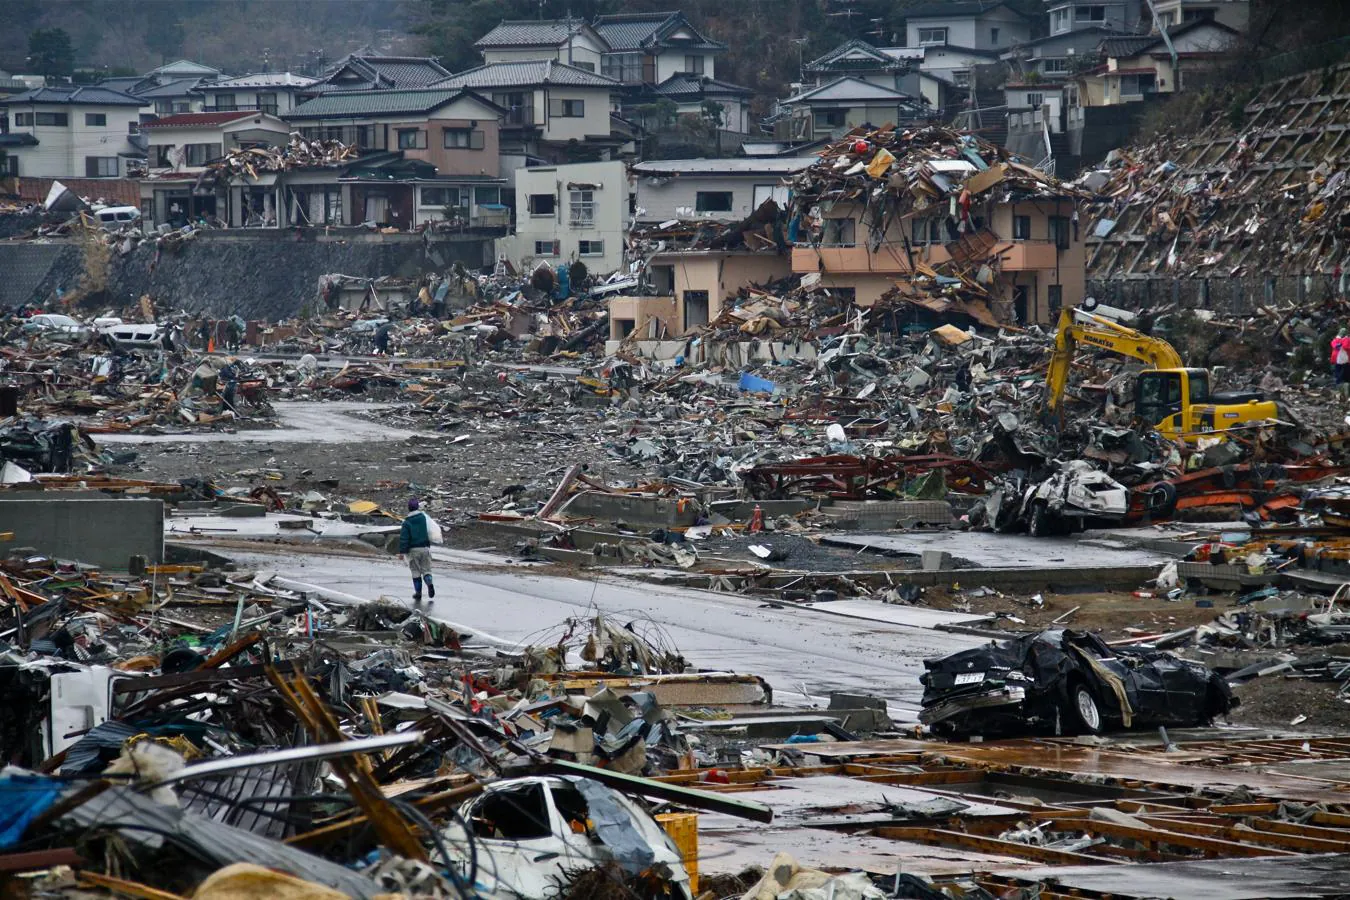 El 11 de marzo de 2011, un terremoto de magnitud 9 desató un tsunami que arrasó la costa nororiental de Japón. 